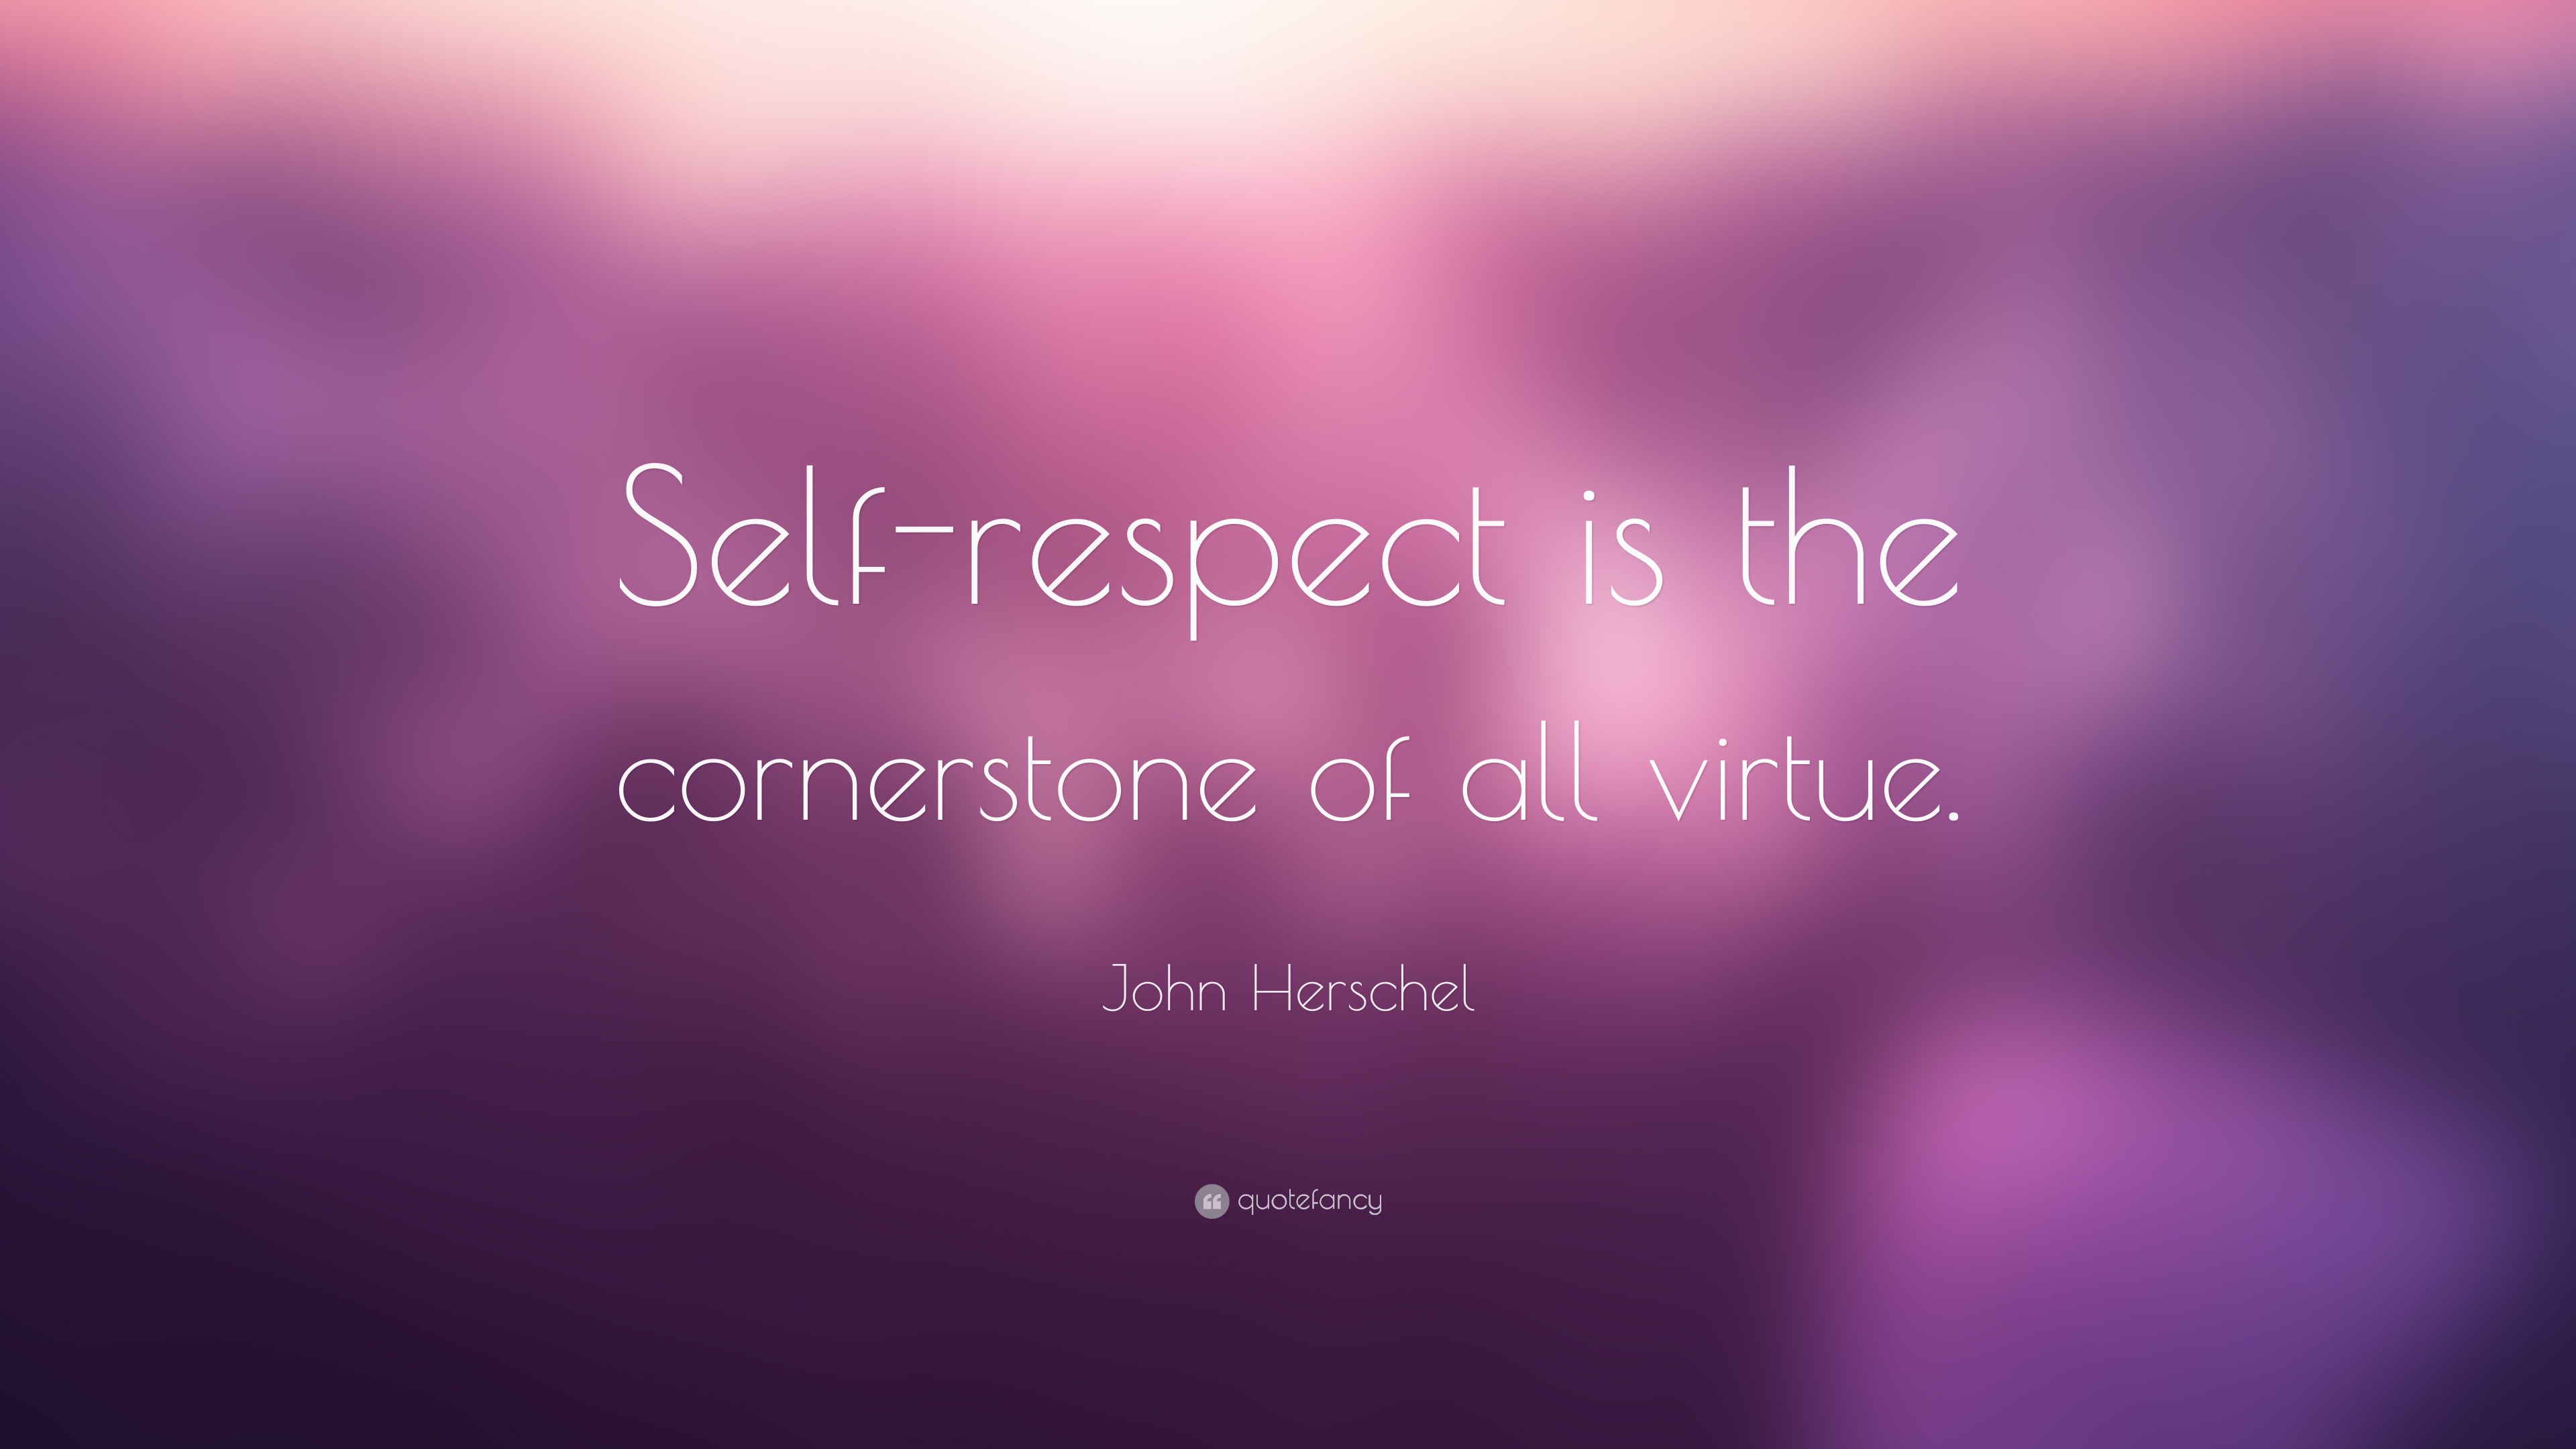 John Herschel Quote: “Self-respect is